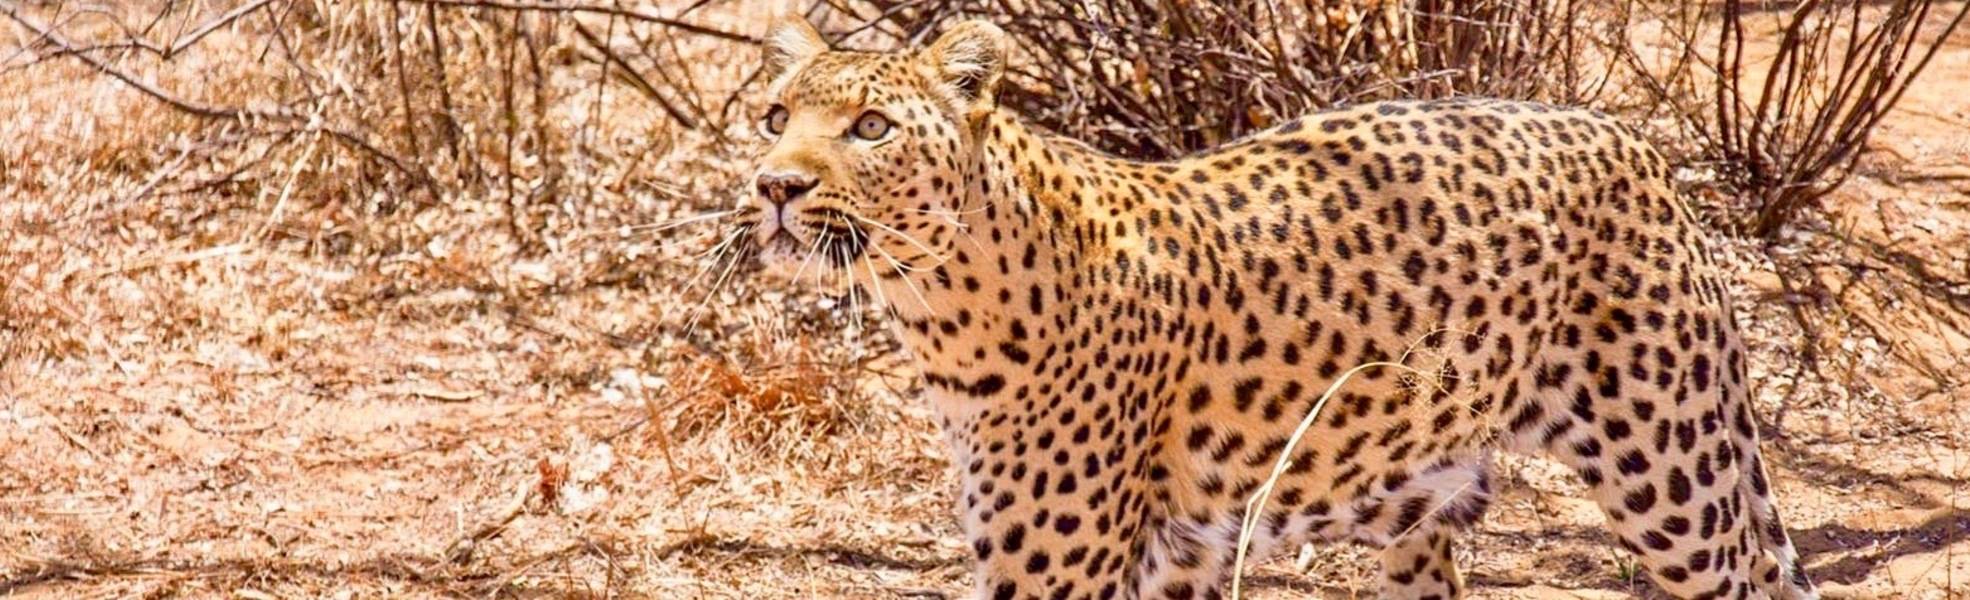 Tierschutz für afrikanische Wildtiere in Namibia